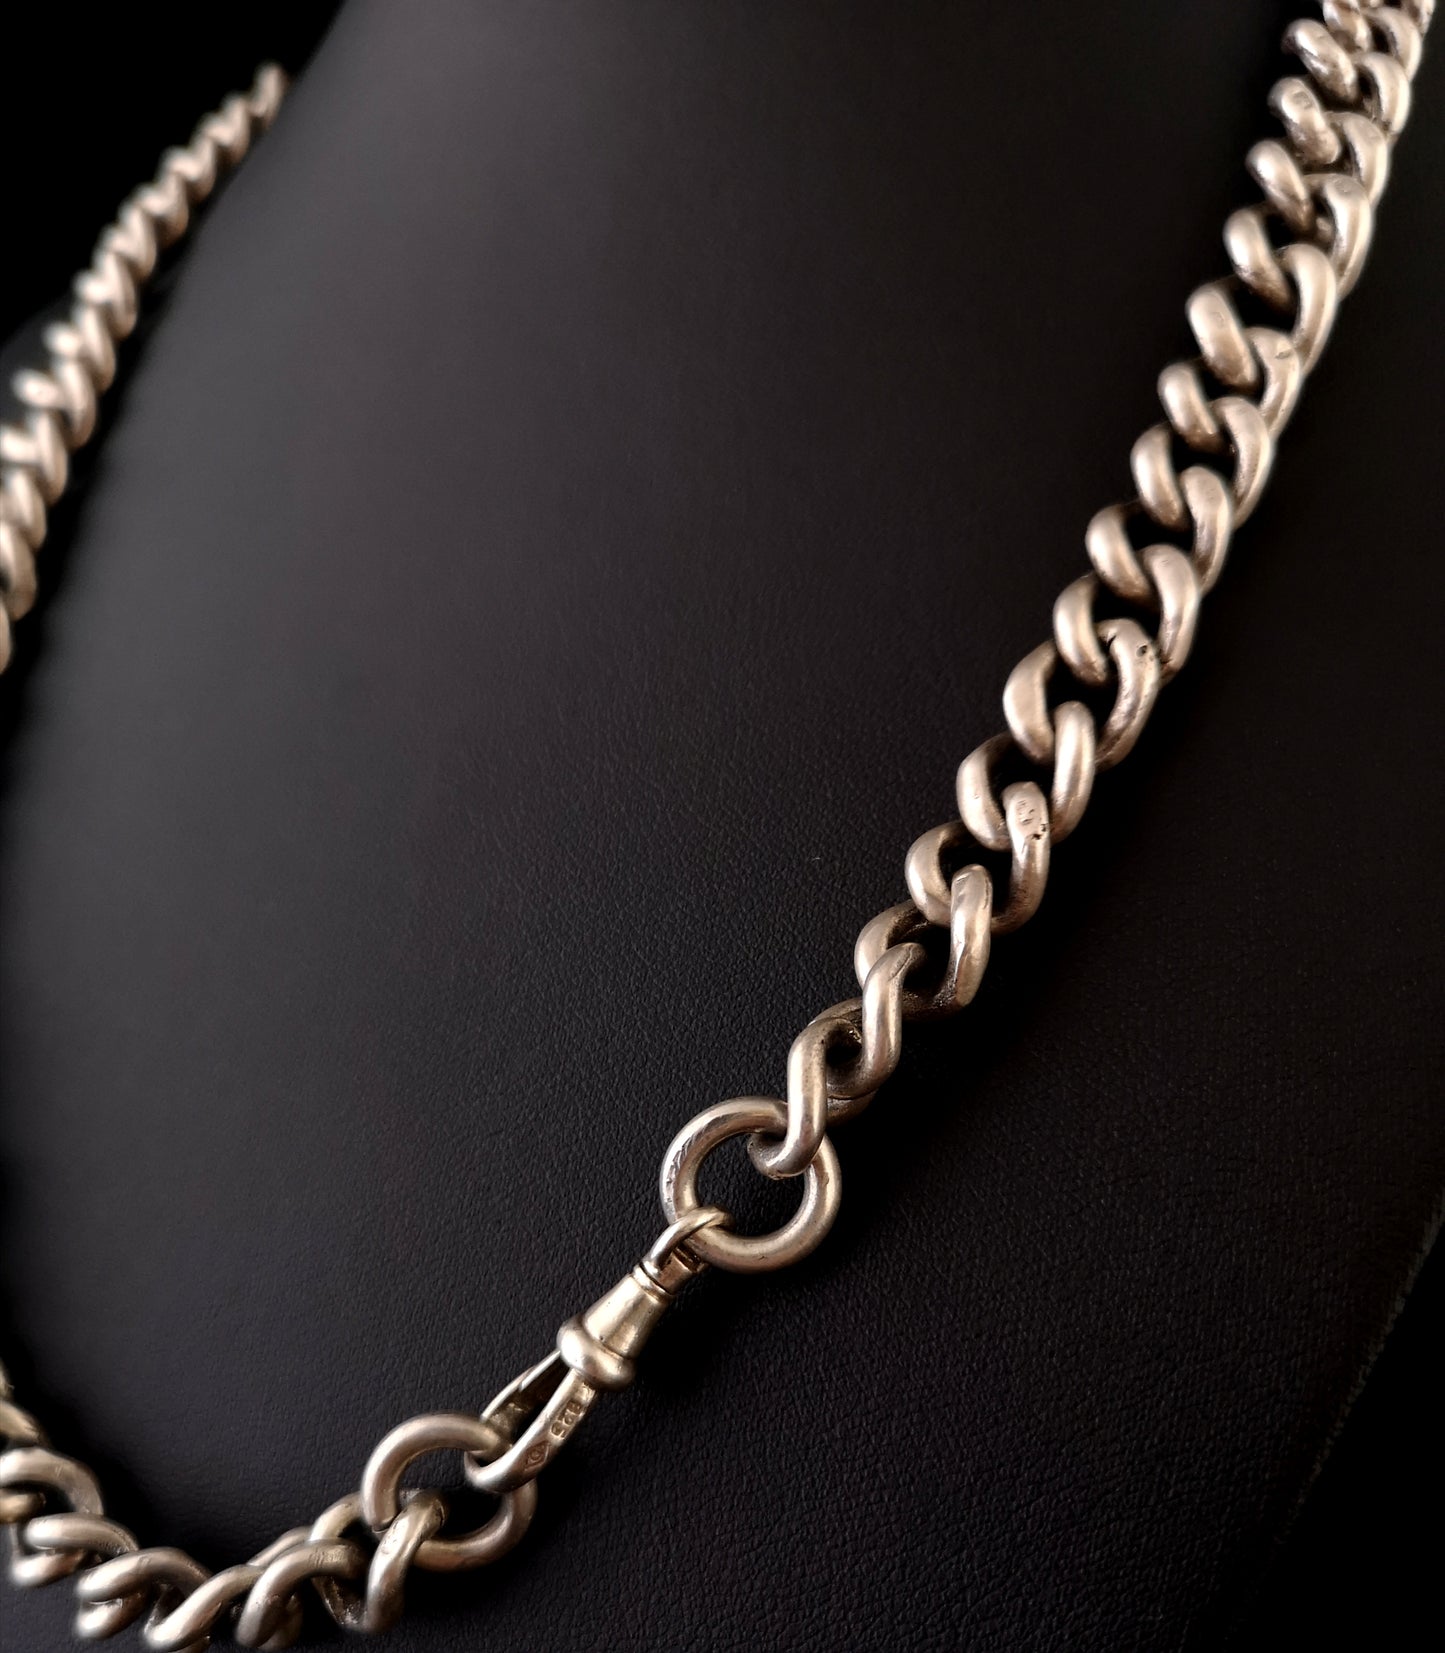 Antique silver albert chain, watch chain, heavy